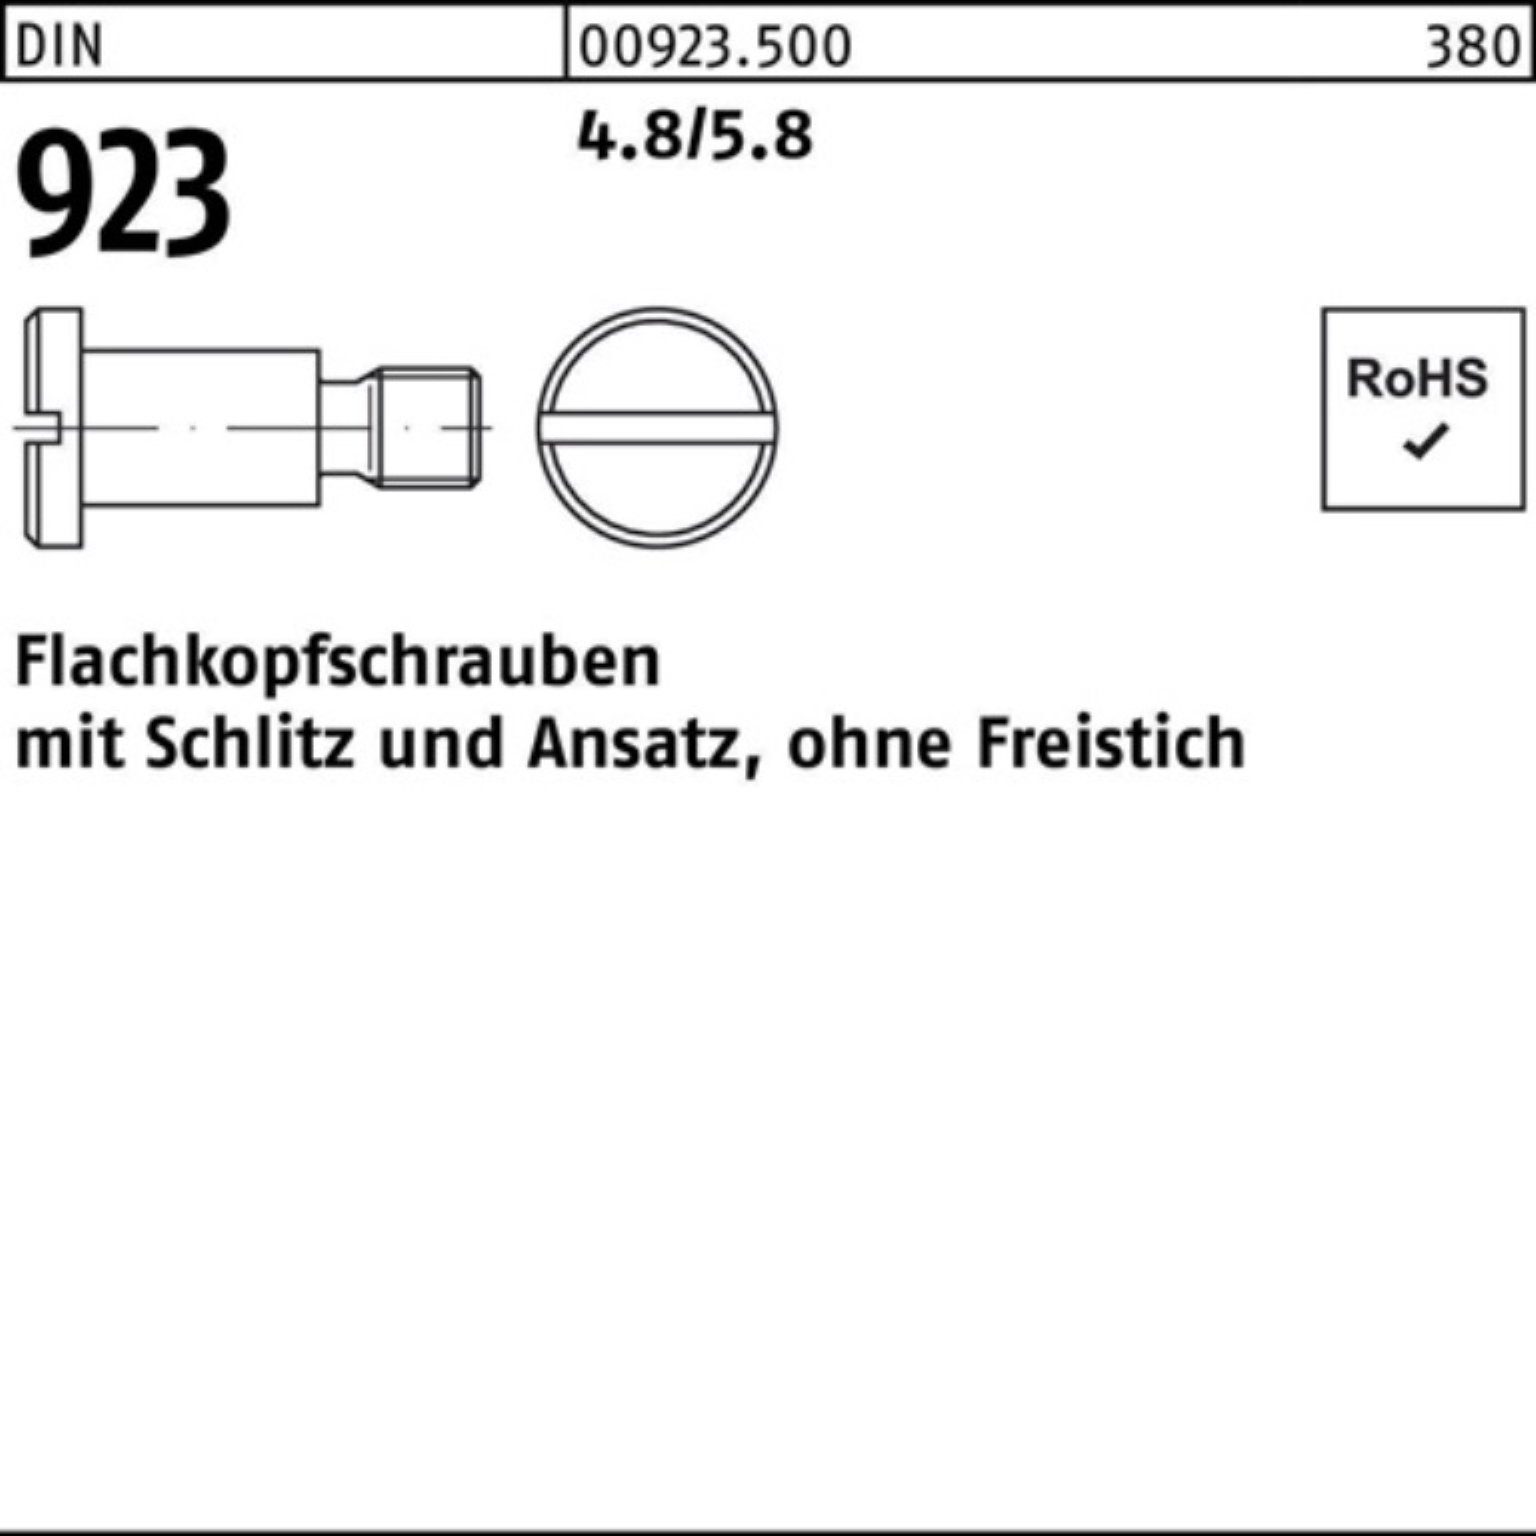 Flachkopfschraube Pack Schlitz/Ansatz 4.8/5.8 Schraube 100er DIN Reyher 923 M8x20x11,0